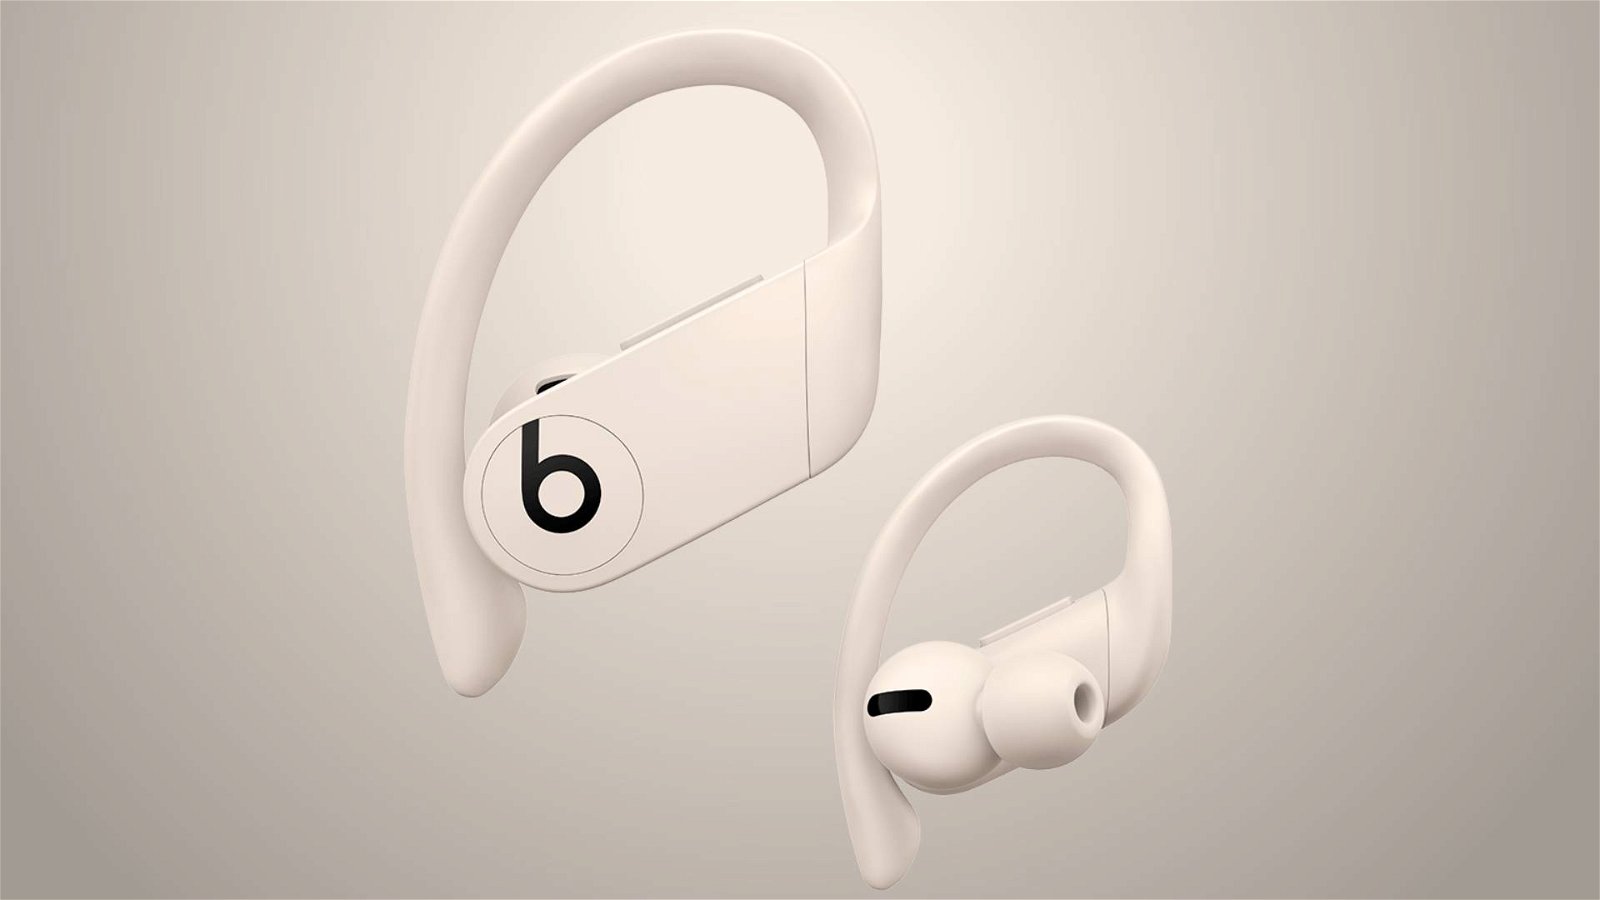 Immagine di Powerbeats Pro, gli auricolari true wireless di Beats costano 250 euro